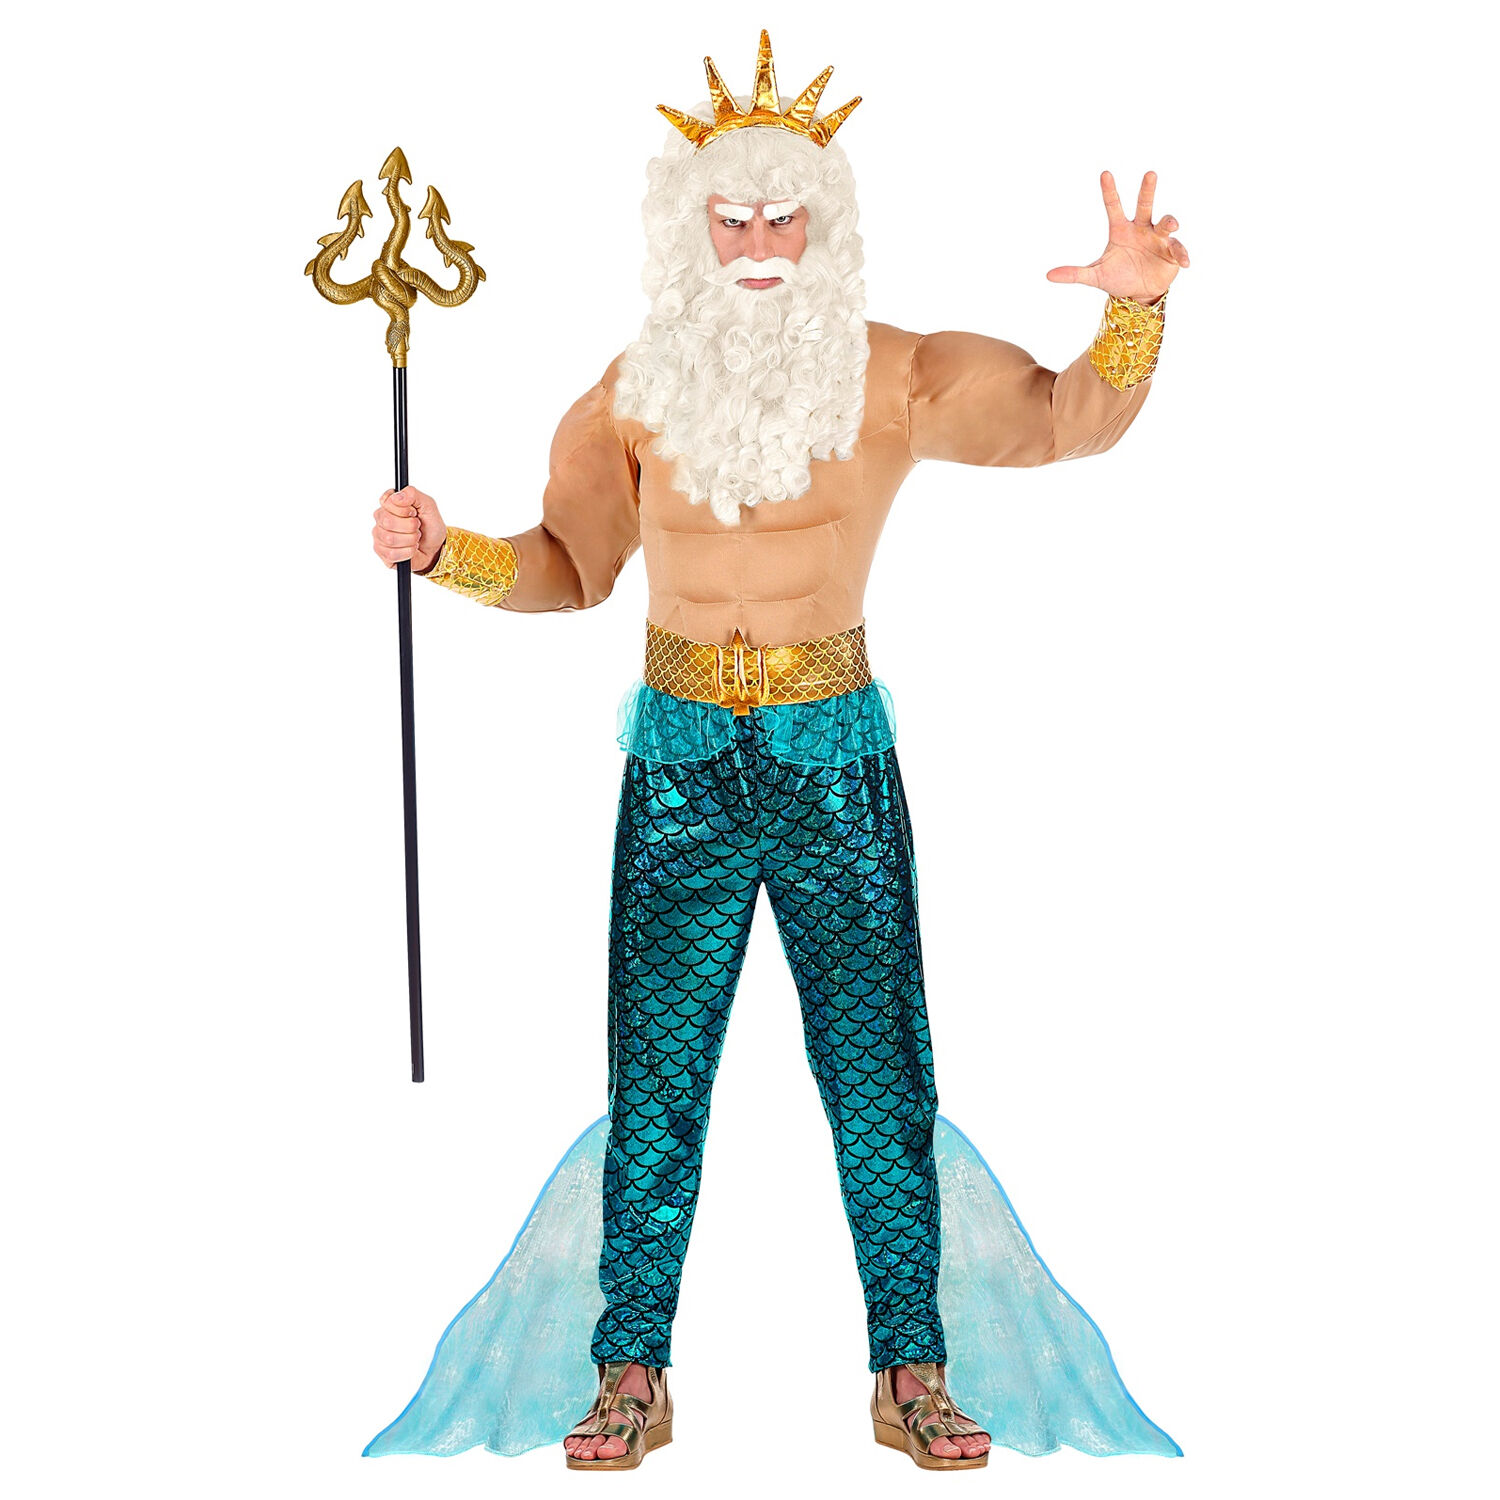 NEU Herren-Kostüm Poseidon / Wassermann, Muskelshirt mit Hose, Gürtel, Armschmuck und Krone, Gr. S